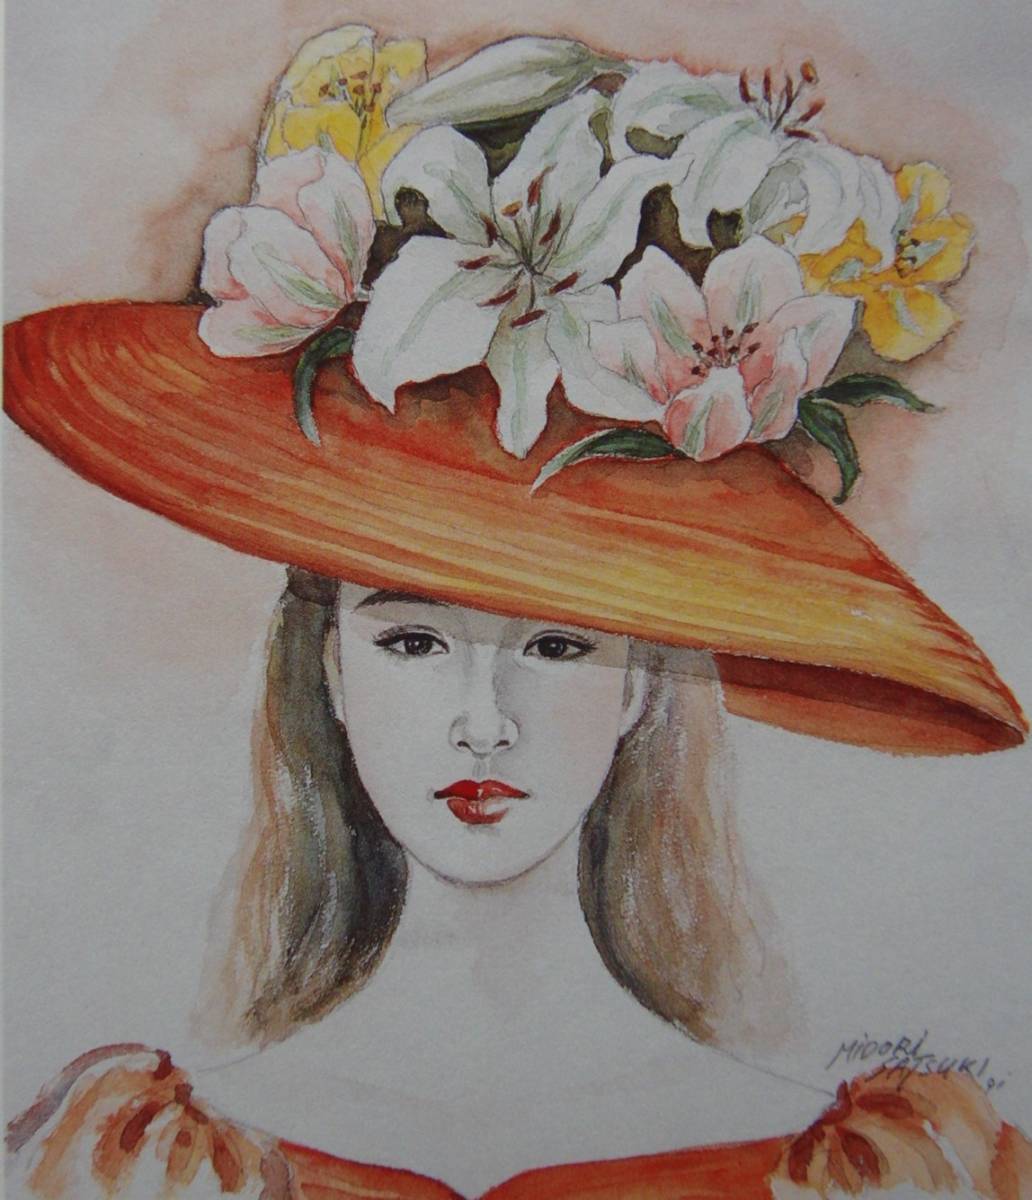 ｢花の帽子 1｣, 五月 みどり, 希少画集･額装画, 日本製新品額縁, 状態良好, 送料無料, 美術品, 絵画, 人物画